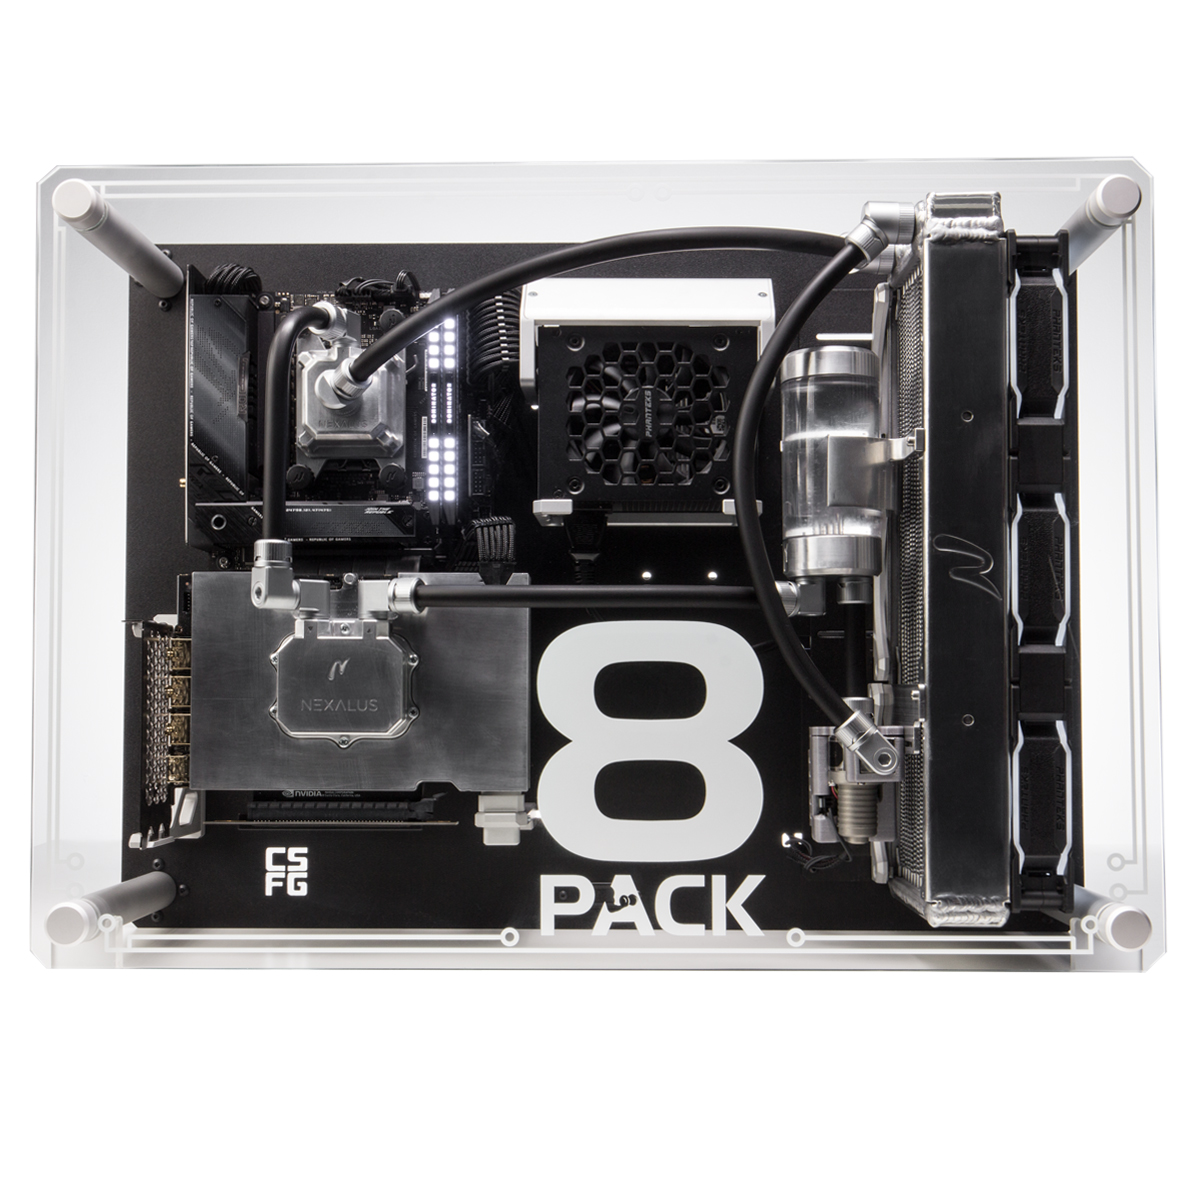 8Pack - Ordenador 8Pack Frame R8i